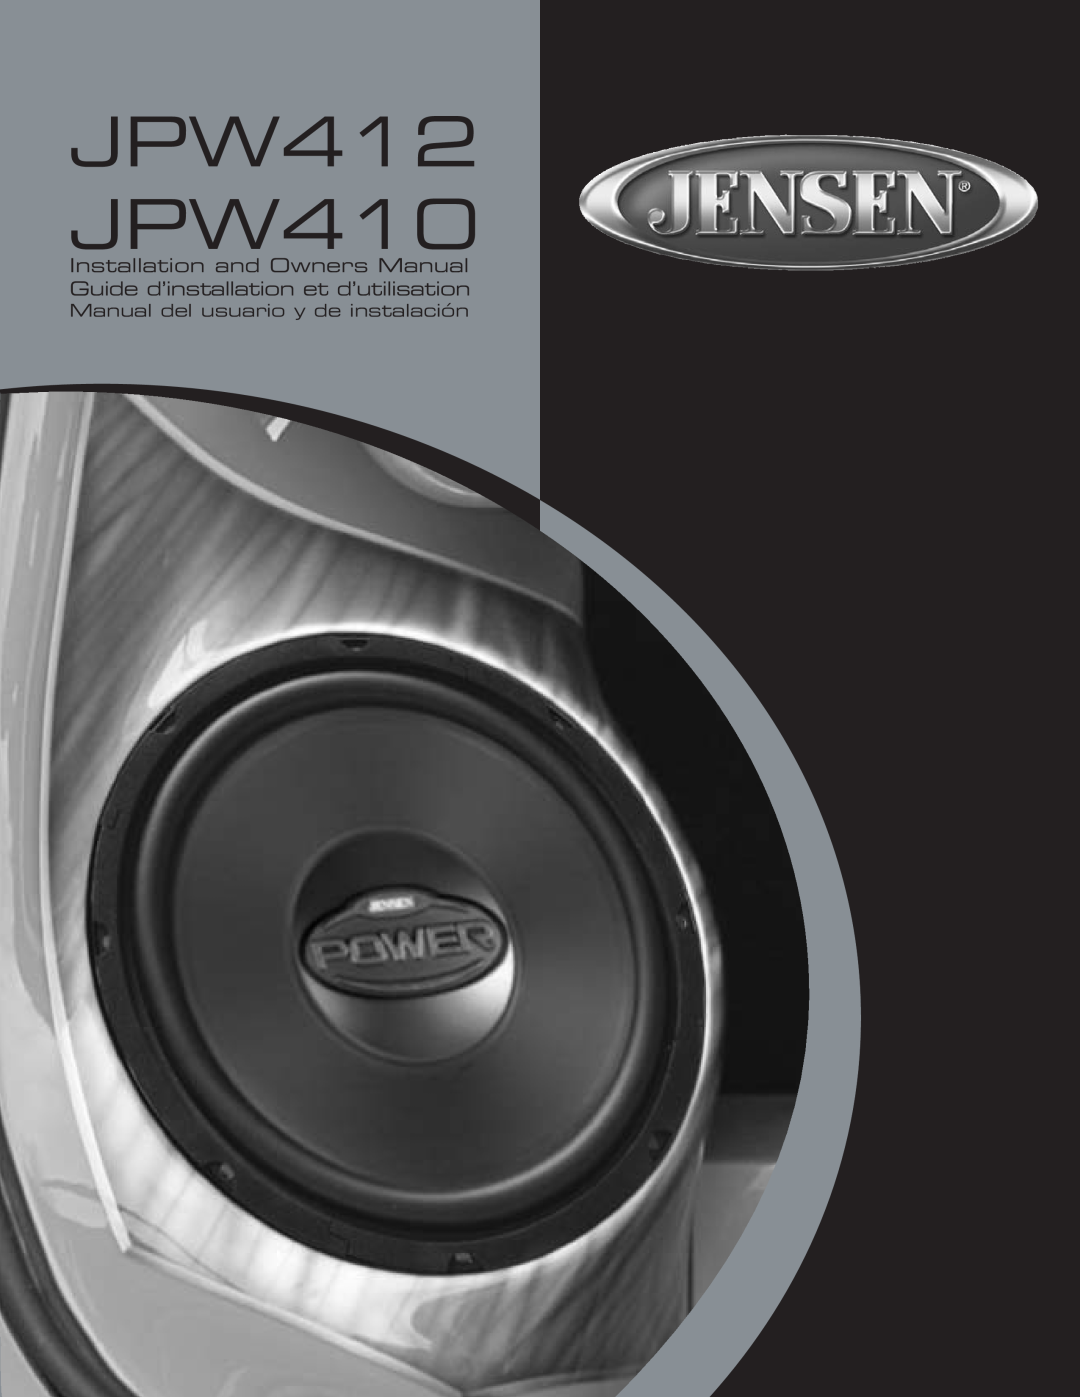 Jensen owner manual Manual del usuario y de instalación, JPW412 JPW410 